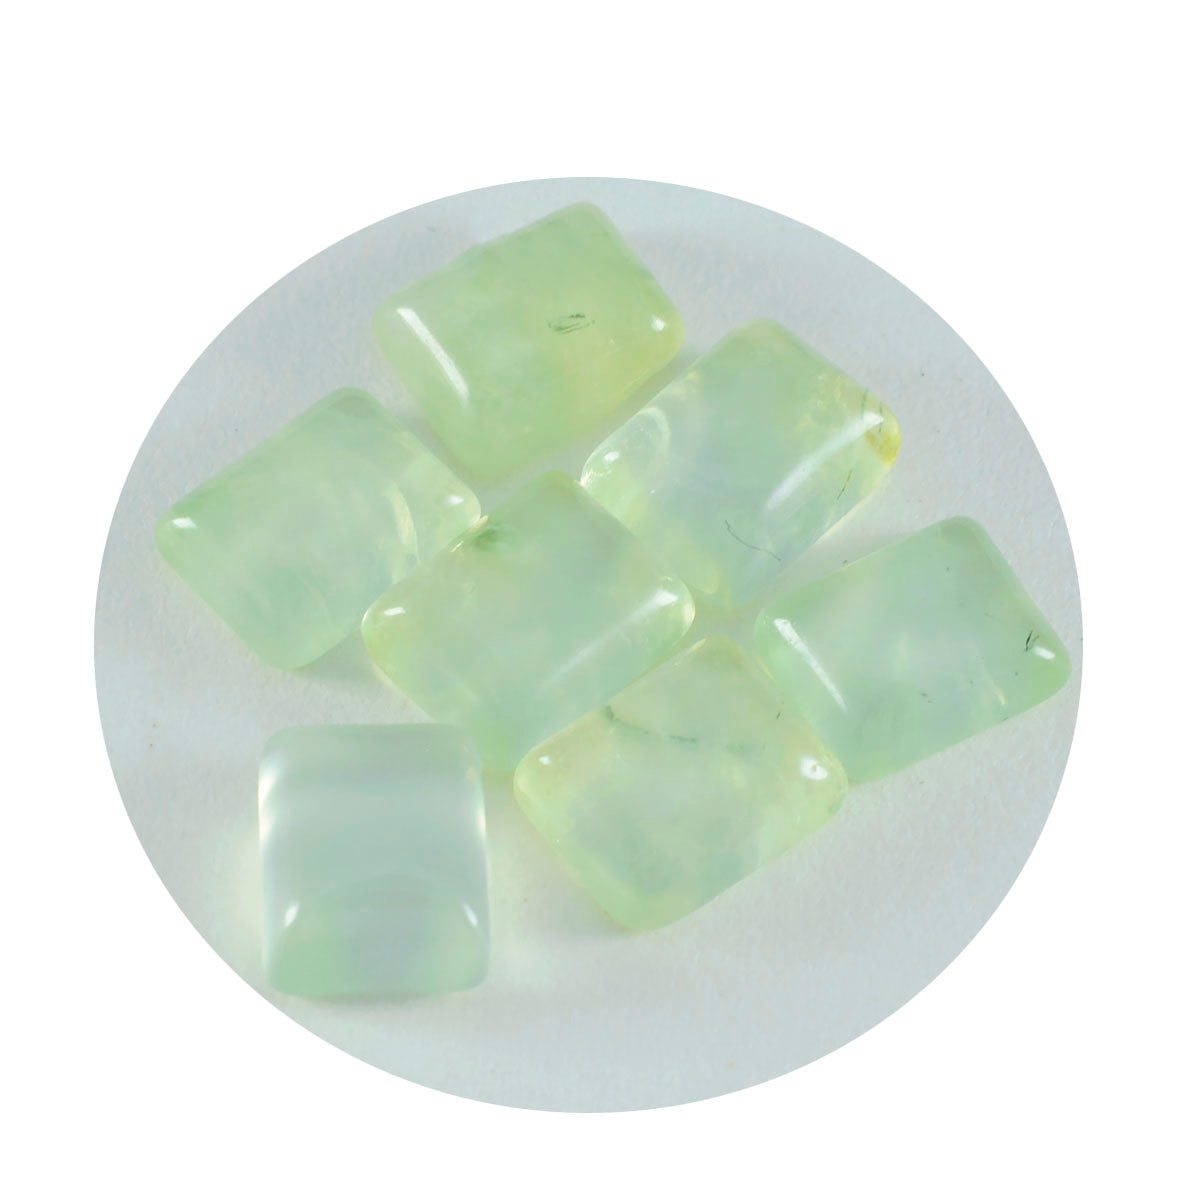 riyogems 1 шт., зеленый пренит кабошон 12x16 мм, восьмиугольная форма, хорошее качество, свободные драгоценные камни